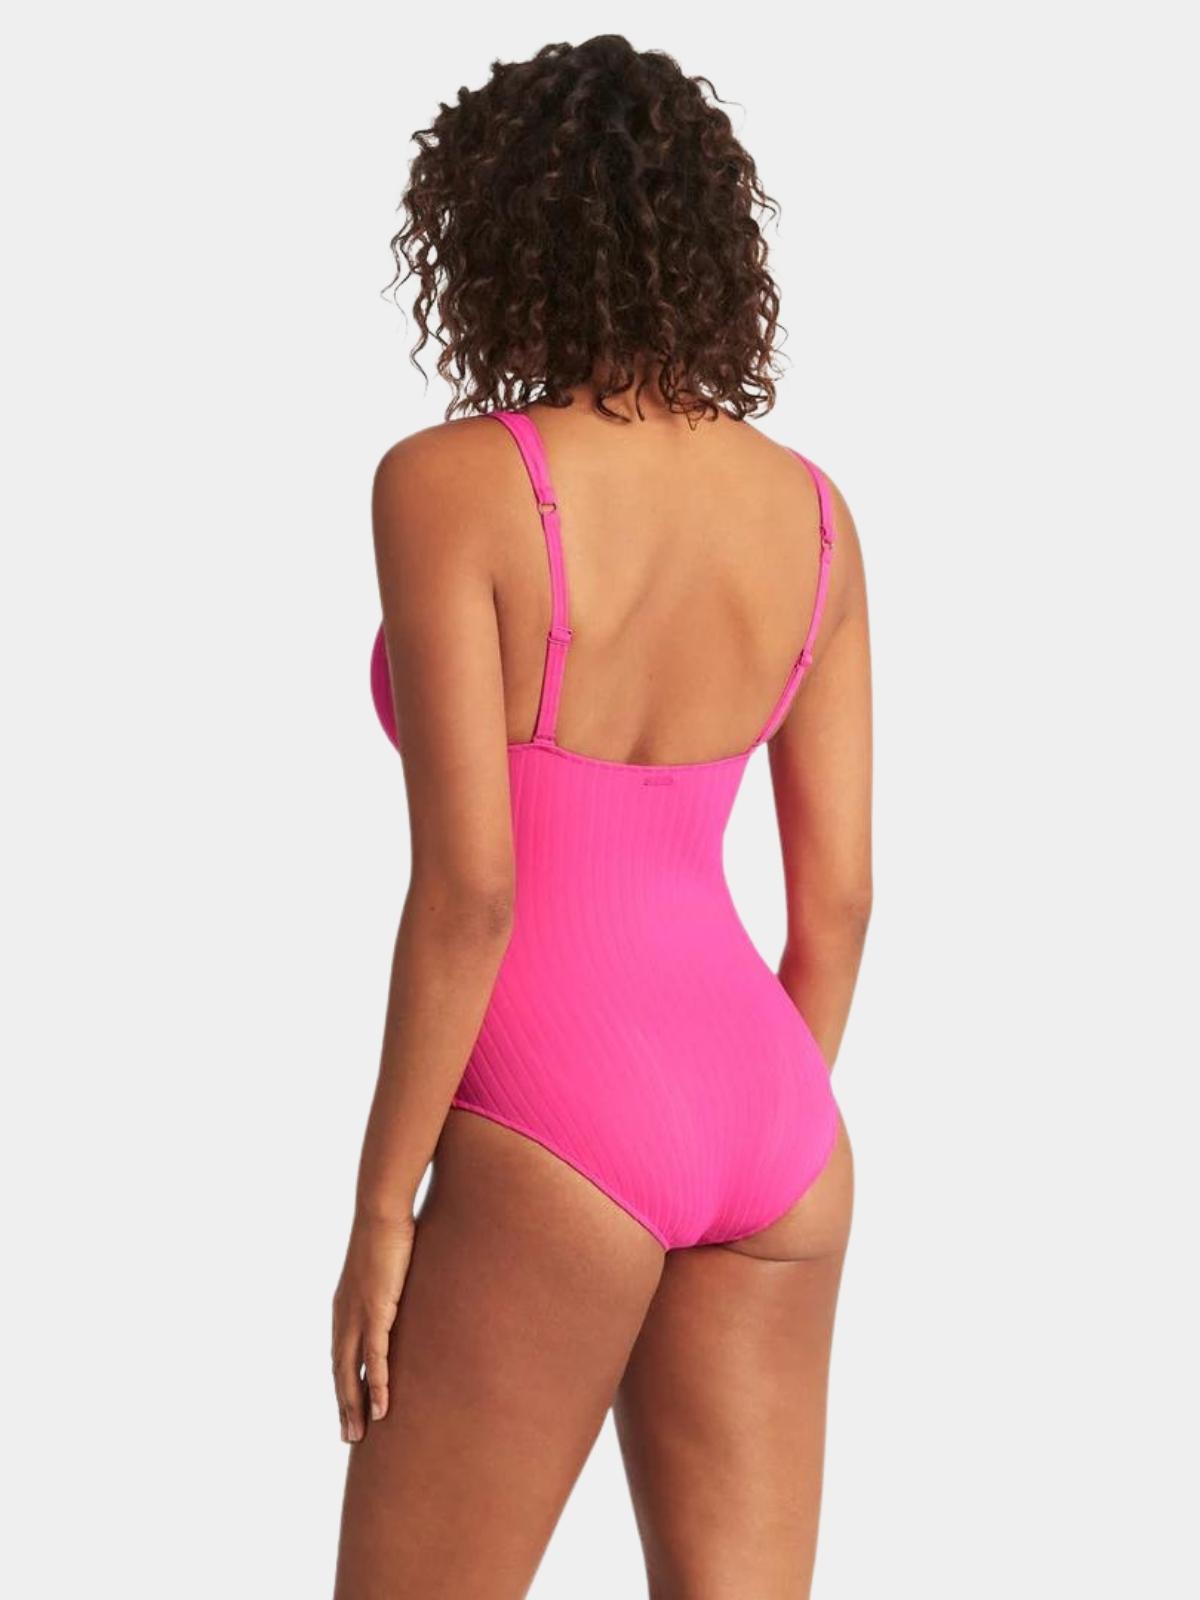 https://www.purelyswim.com/wp-content/uploads/2022/08/sea-level-womens-vesper-longline-one-piece-swimsuit-back.jpg